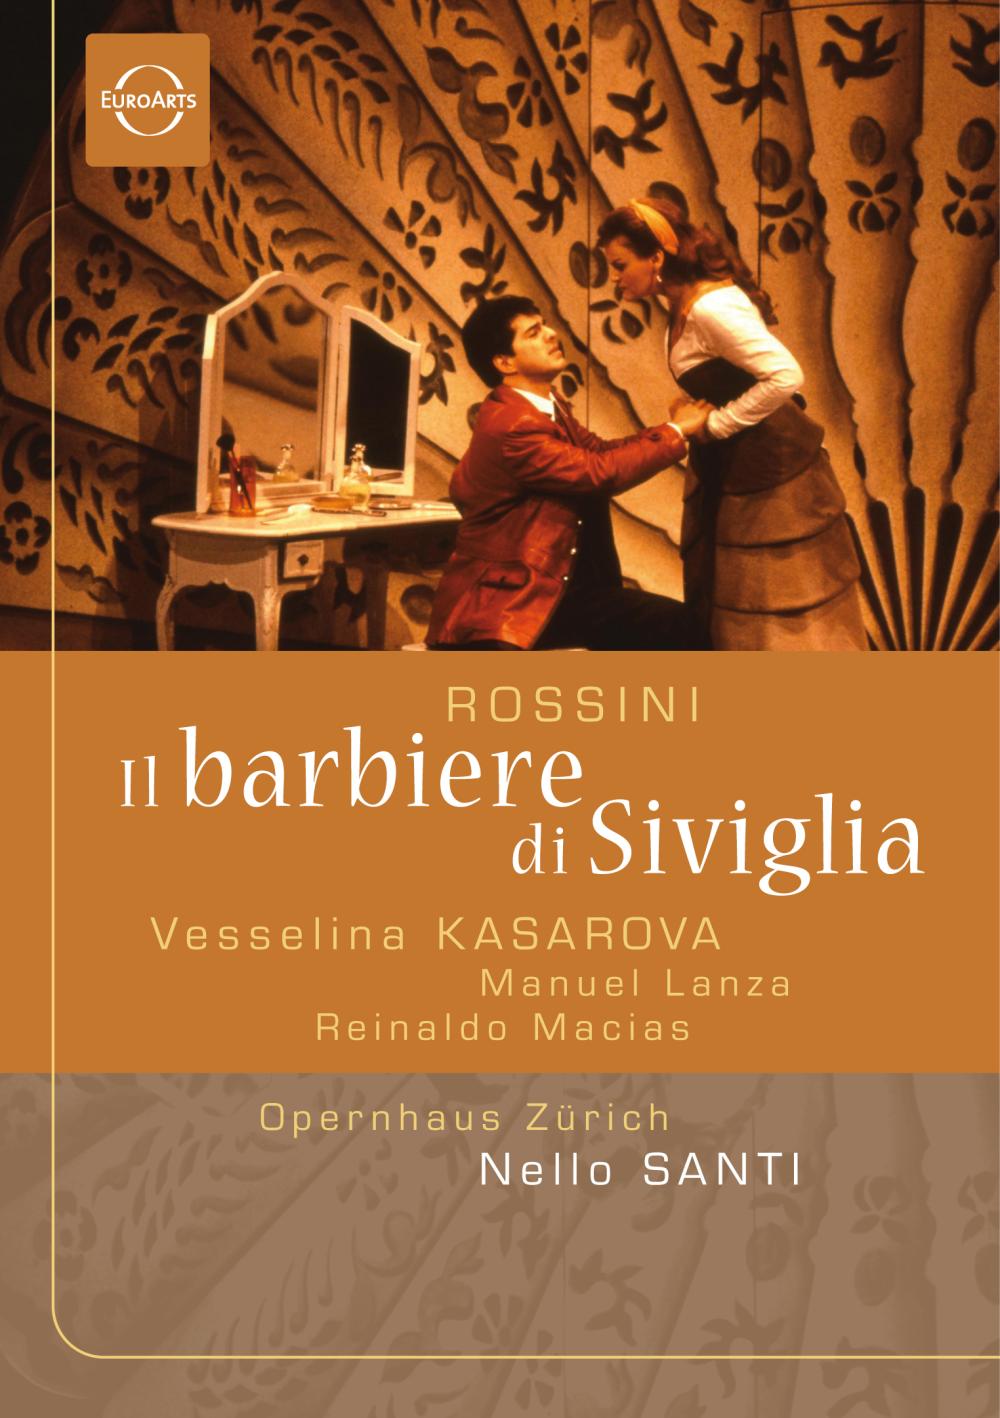 Rossini: Il barbiere di Siviglia - EUROARTS